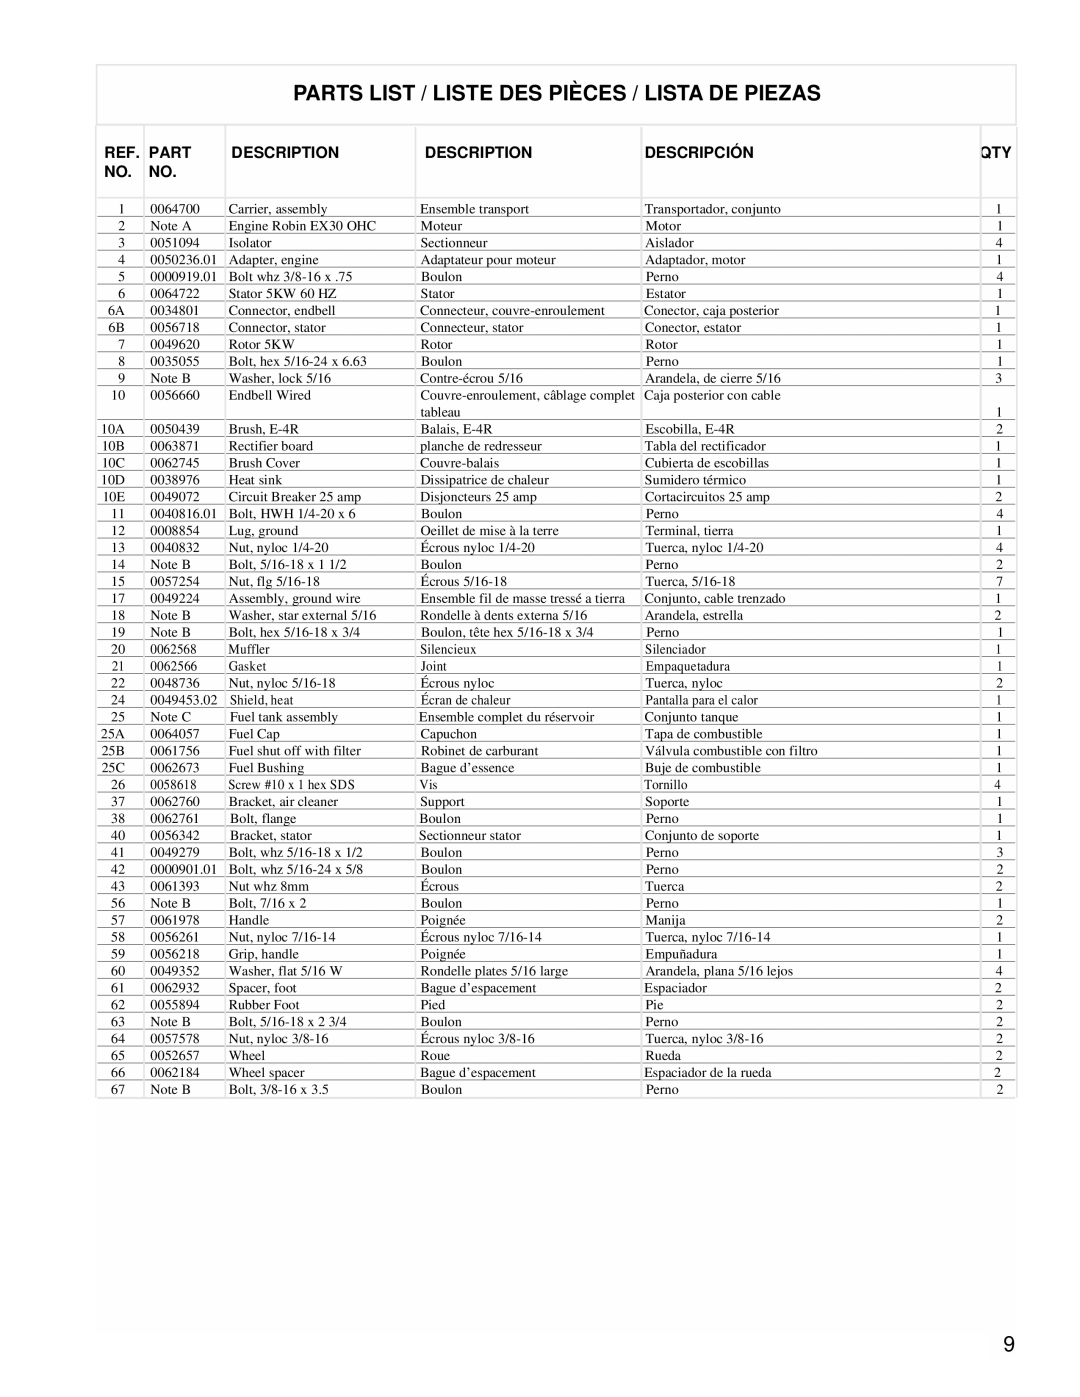 Powermate PM0435002 manual Parts List / Liste Des Pièces / Lista De Piezas, Description, Descripción 